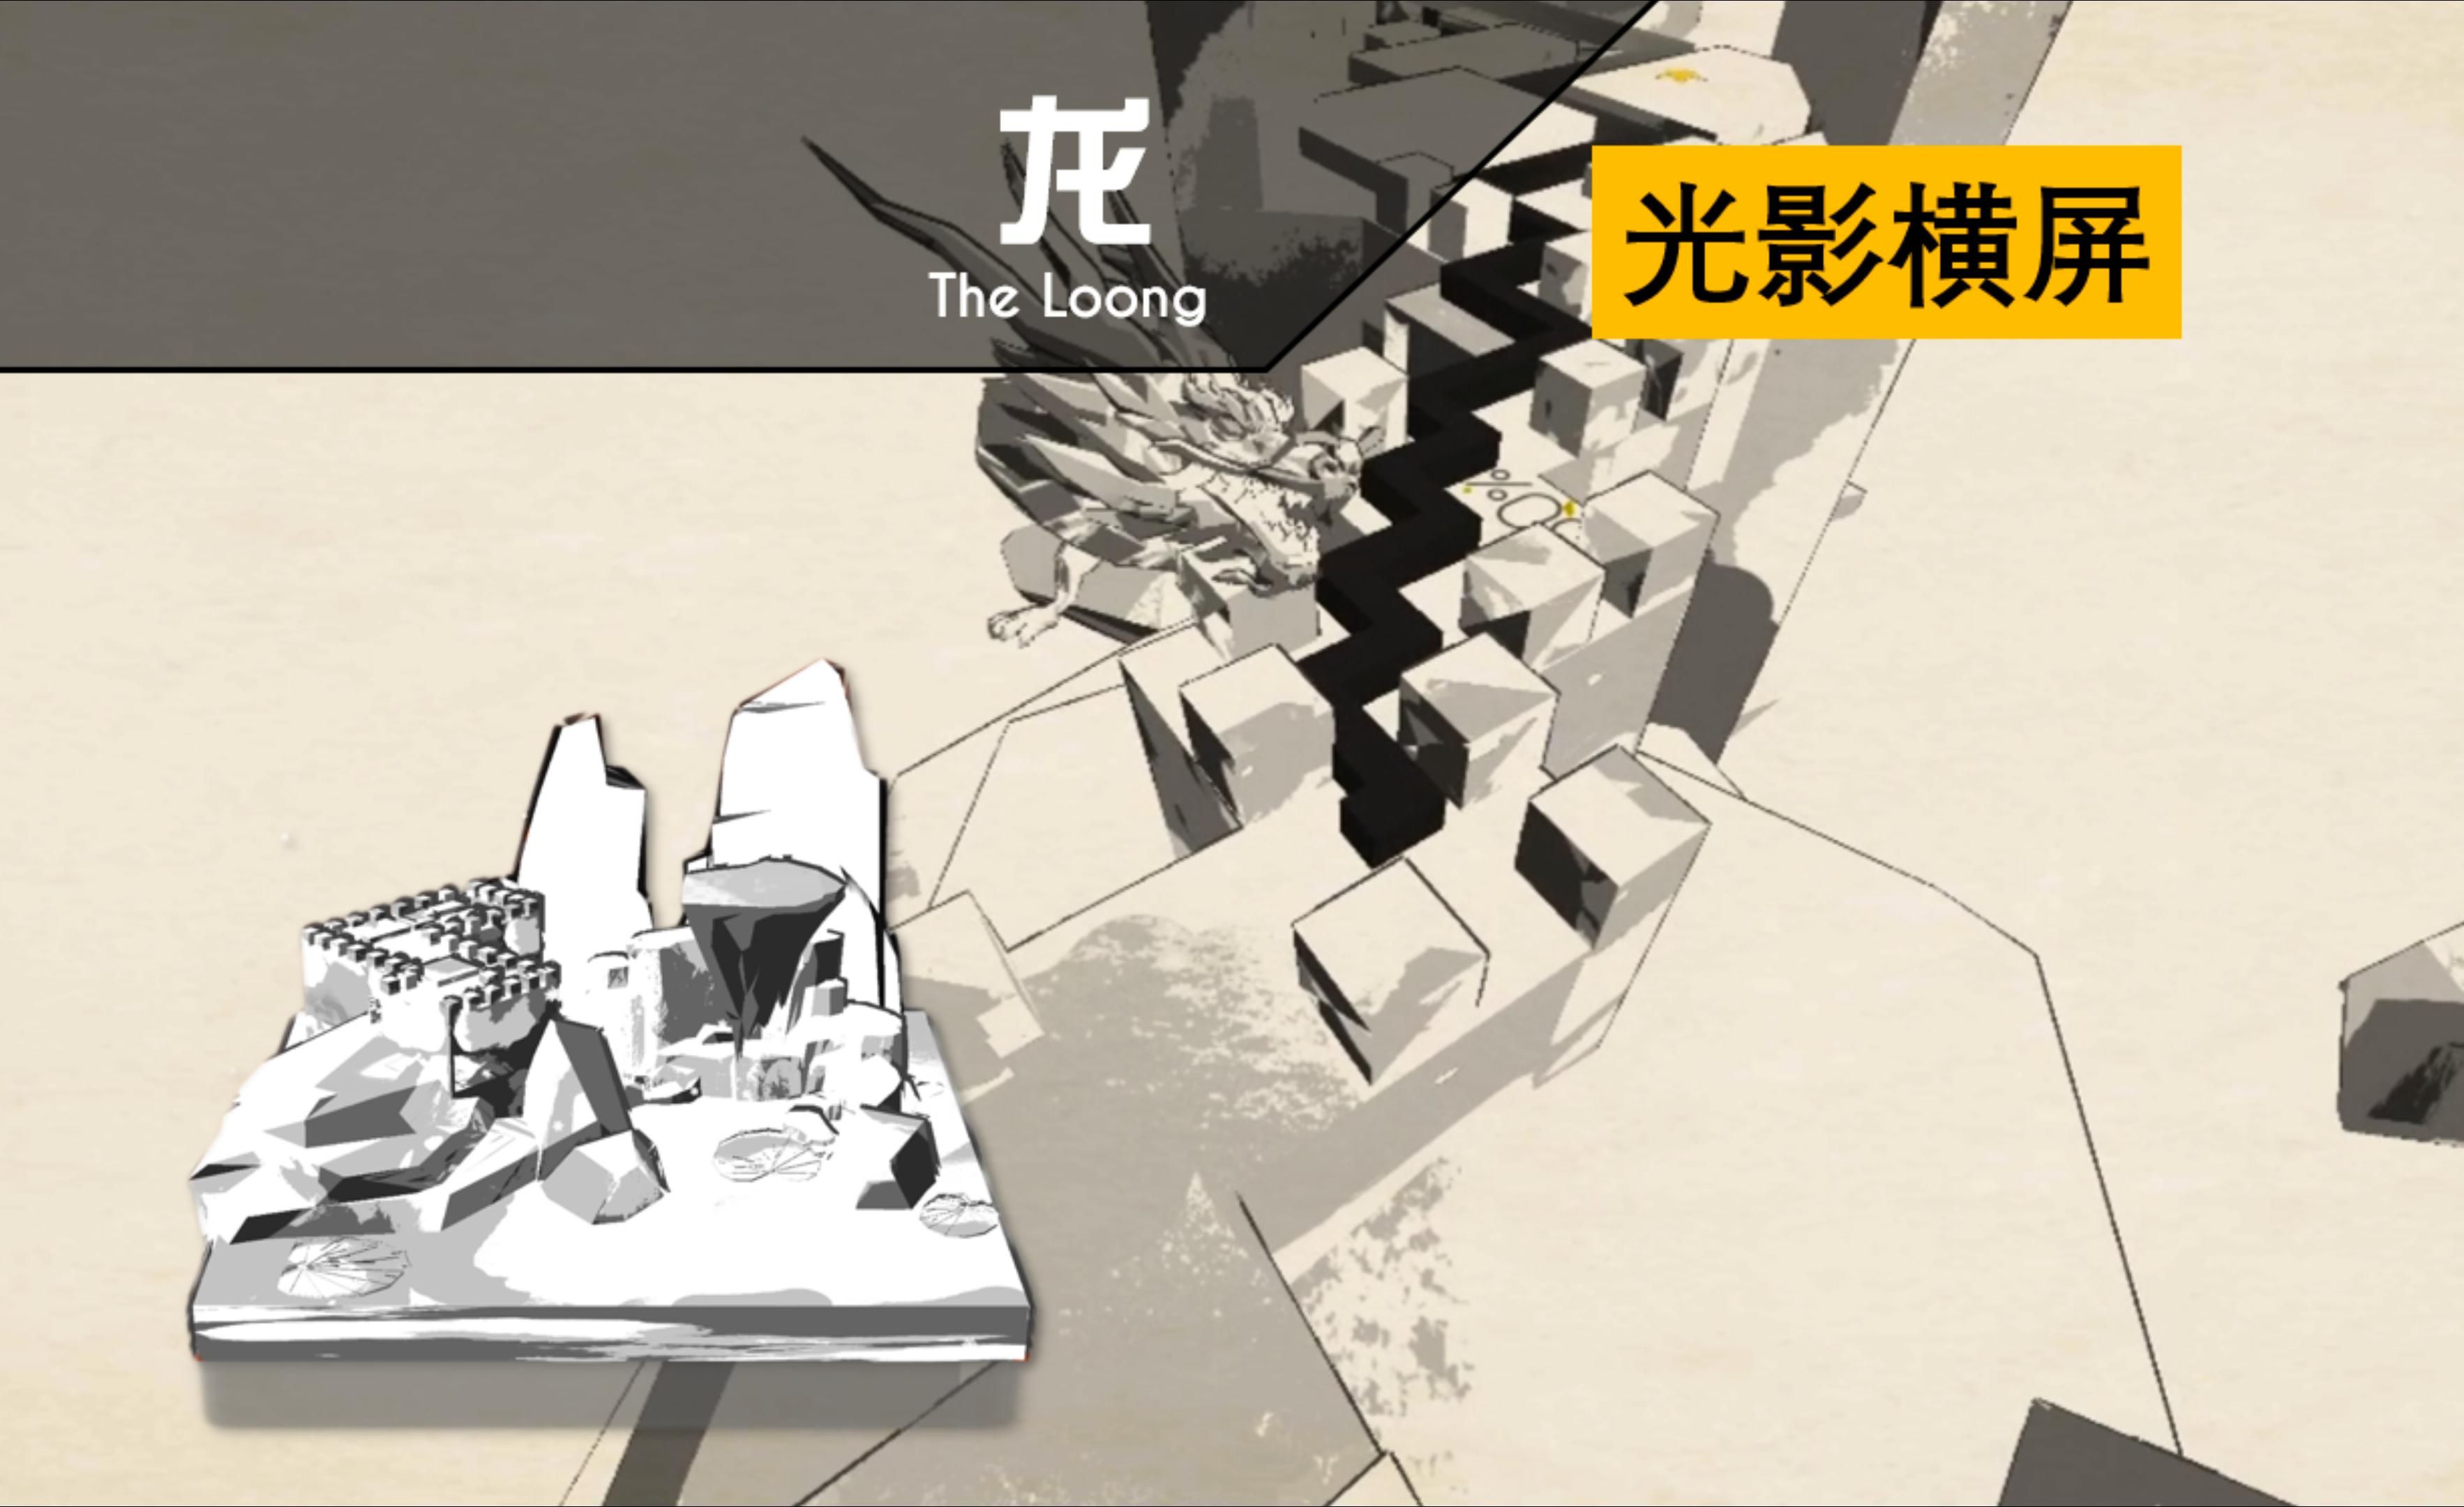 [跳舞的线·新关光影横屏] 中国力量！—龙 The Loong 横屏完美通关演示